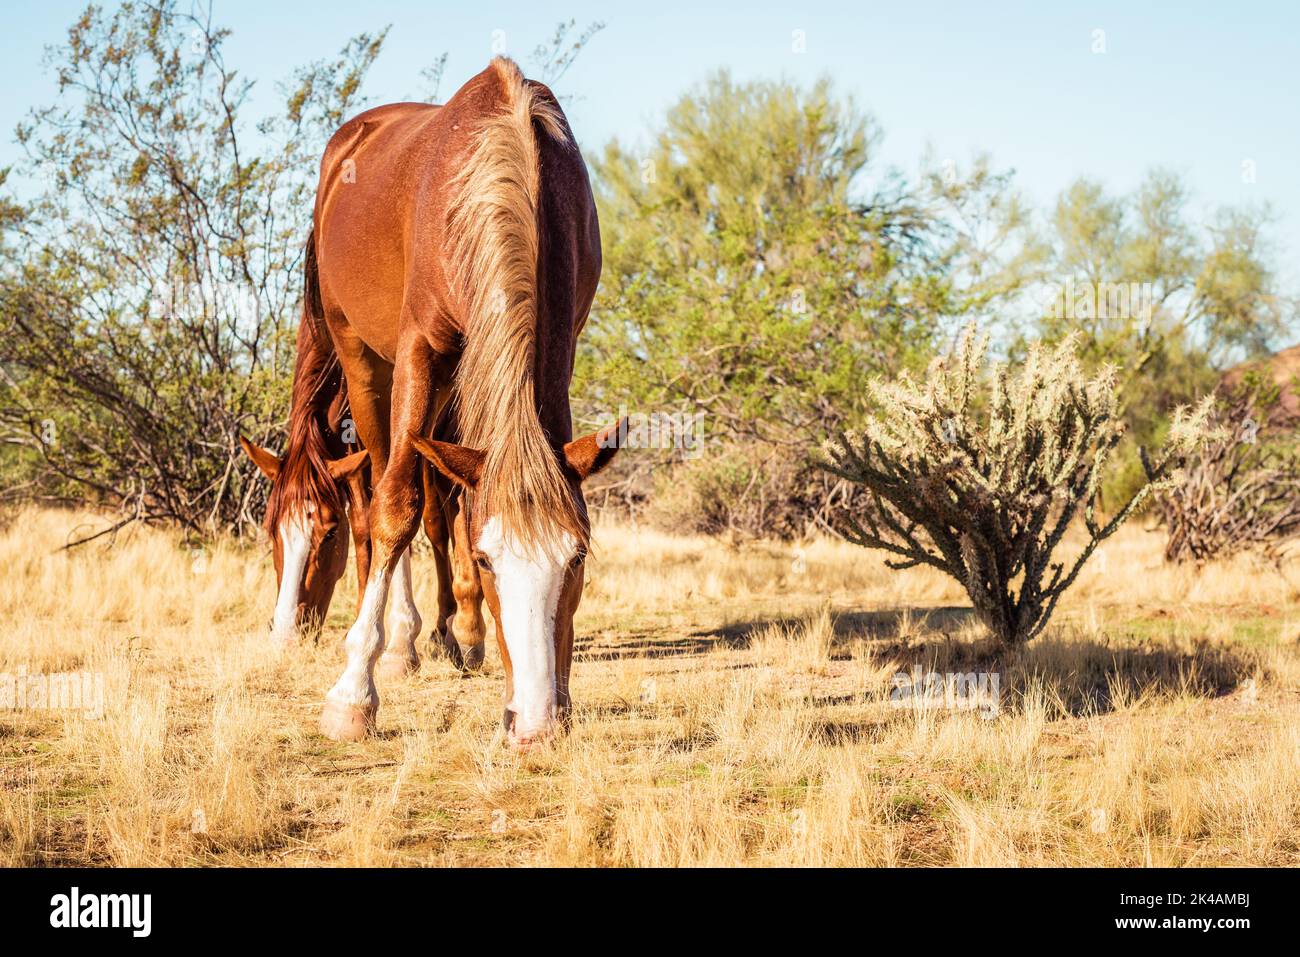 Image horizontale de deux chevaux mustang sauvages bruns qui broutent de l'herbe dans la zone de loisirs de Lower Salt River, Mesa, Arizona. Banque D'Images